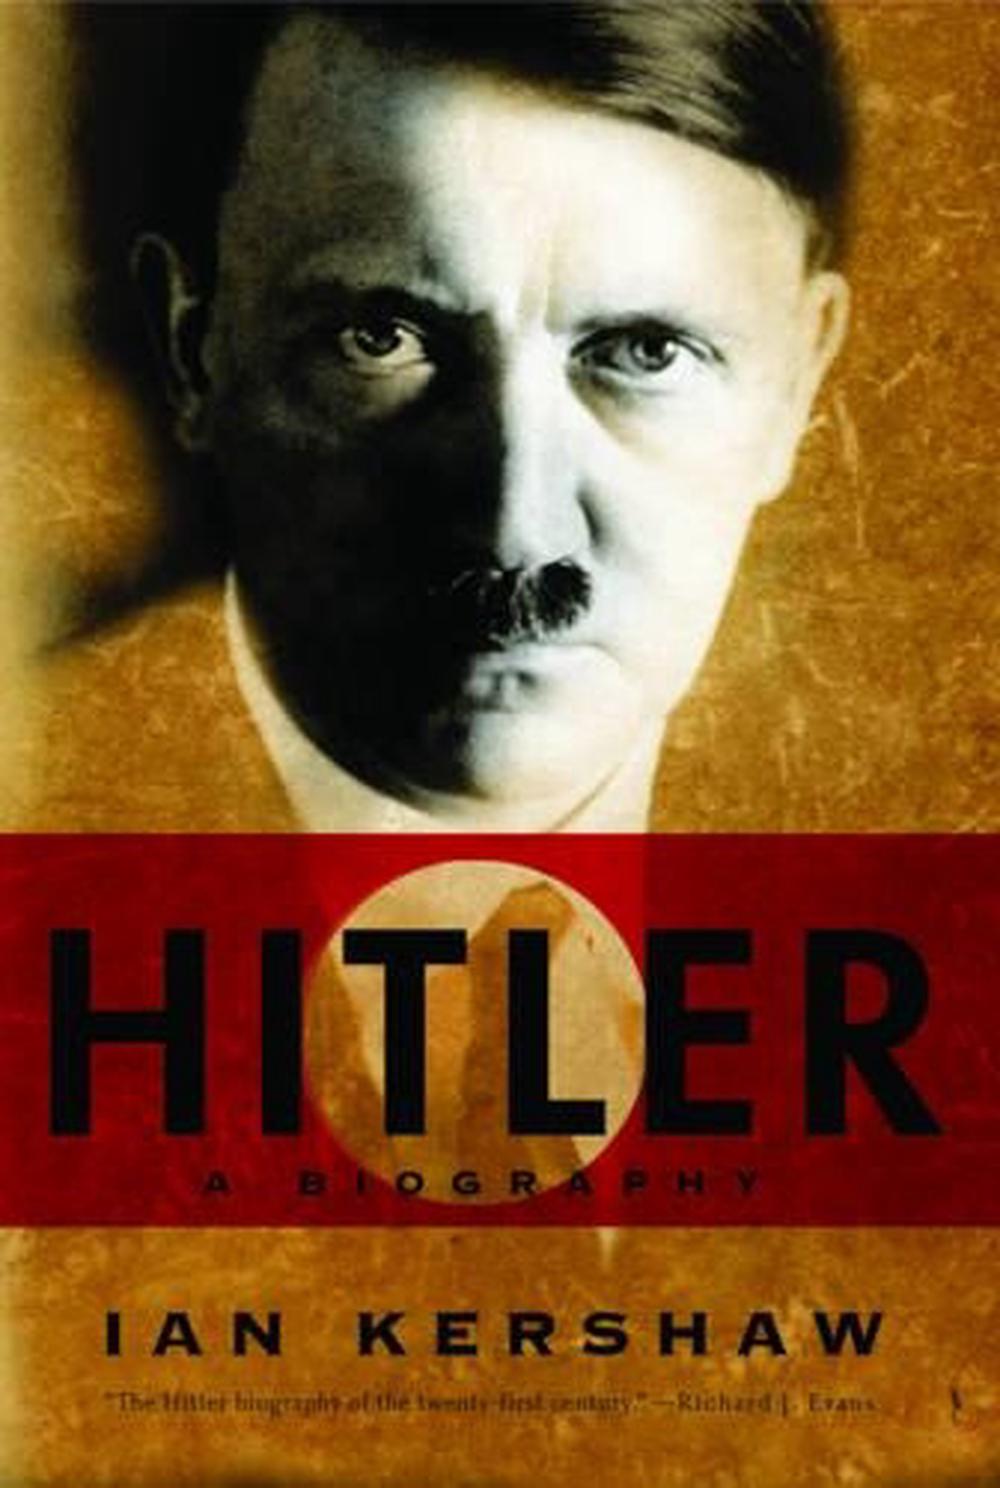 short biography of hitler in english